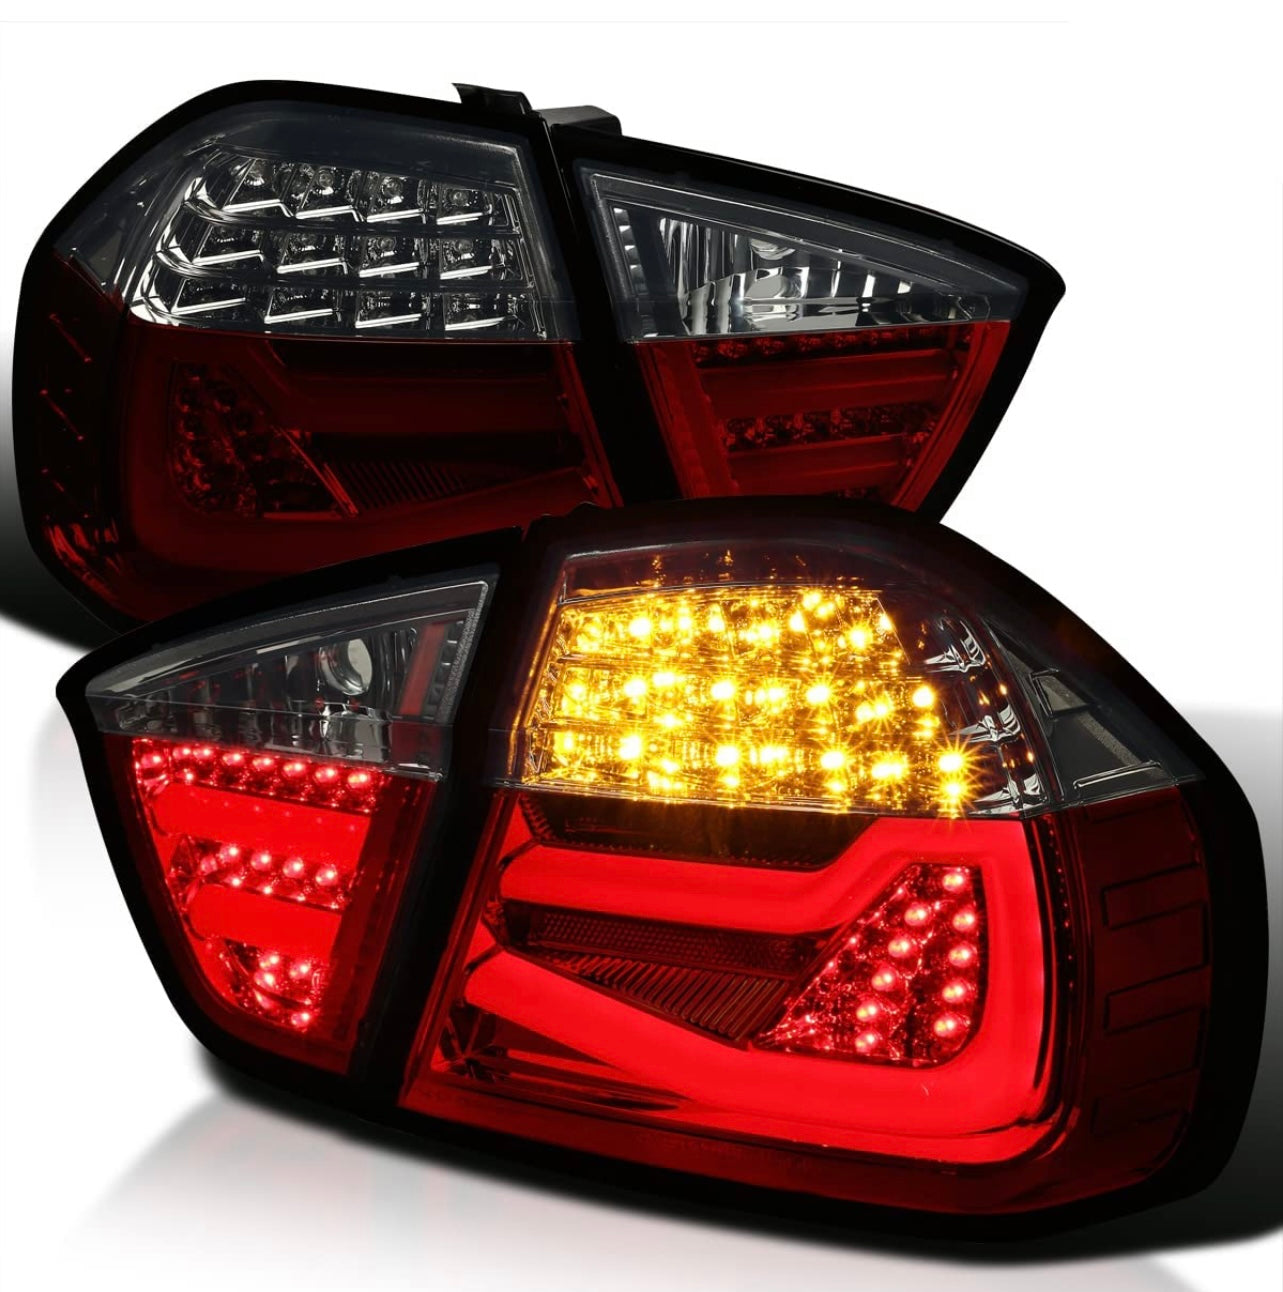 Verbesserte LED-Rücklichter für den BMW E90 Pre-LCI!